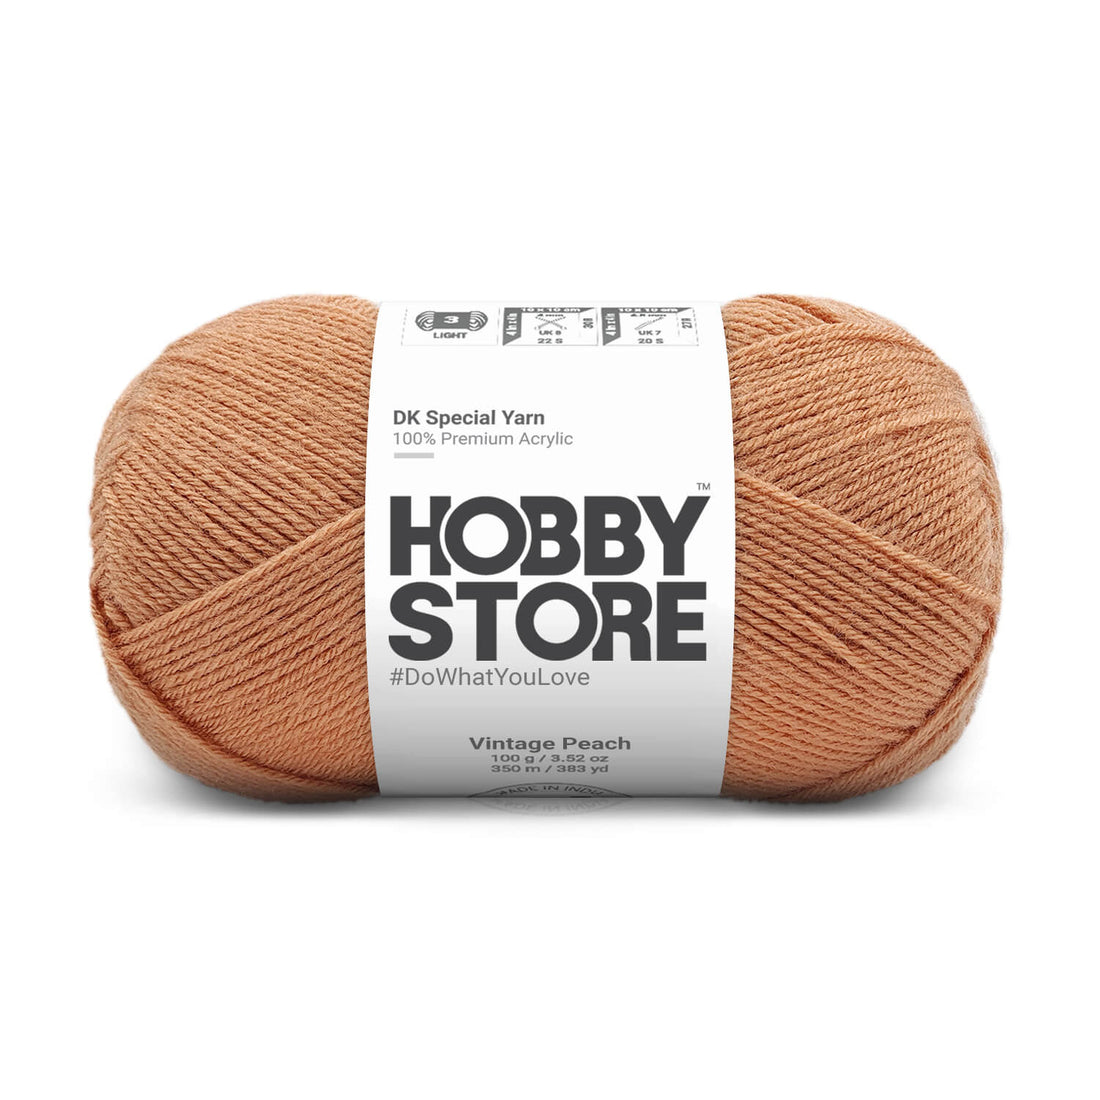 Hobby Store DK Special Yarn - Vintage Peach 1836